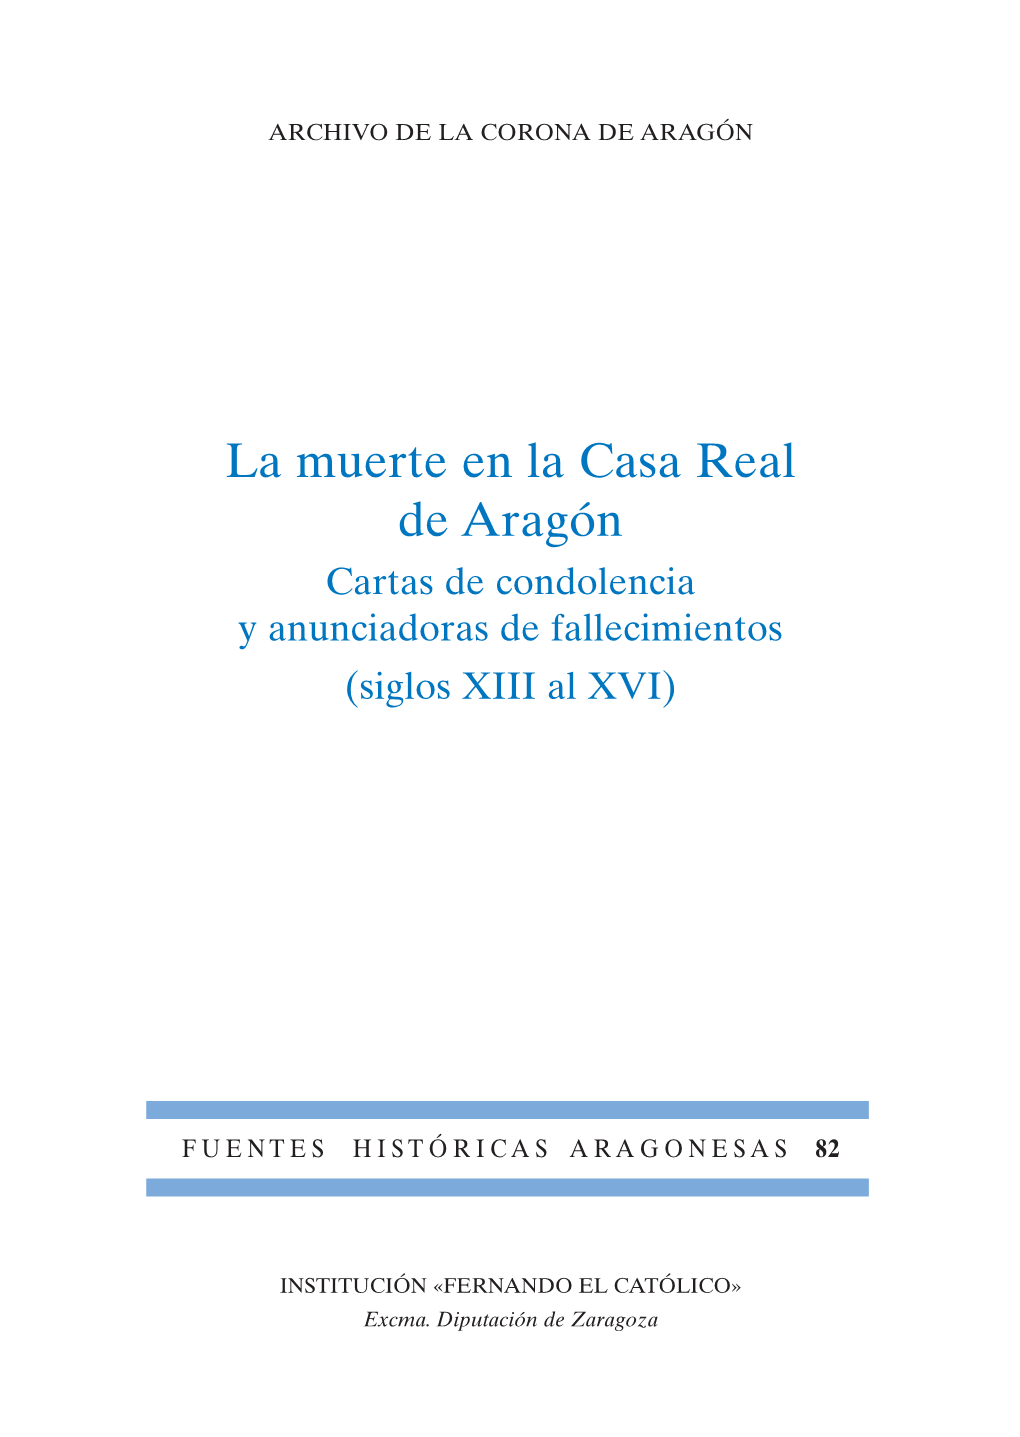 La Muerte En La Casa Real De Aragón Cartas De Condolencia Y Anunciadoras De Fallecimientos (Siglos XIII Al XVI)